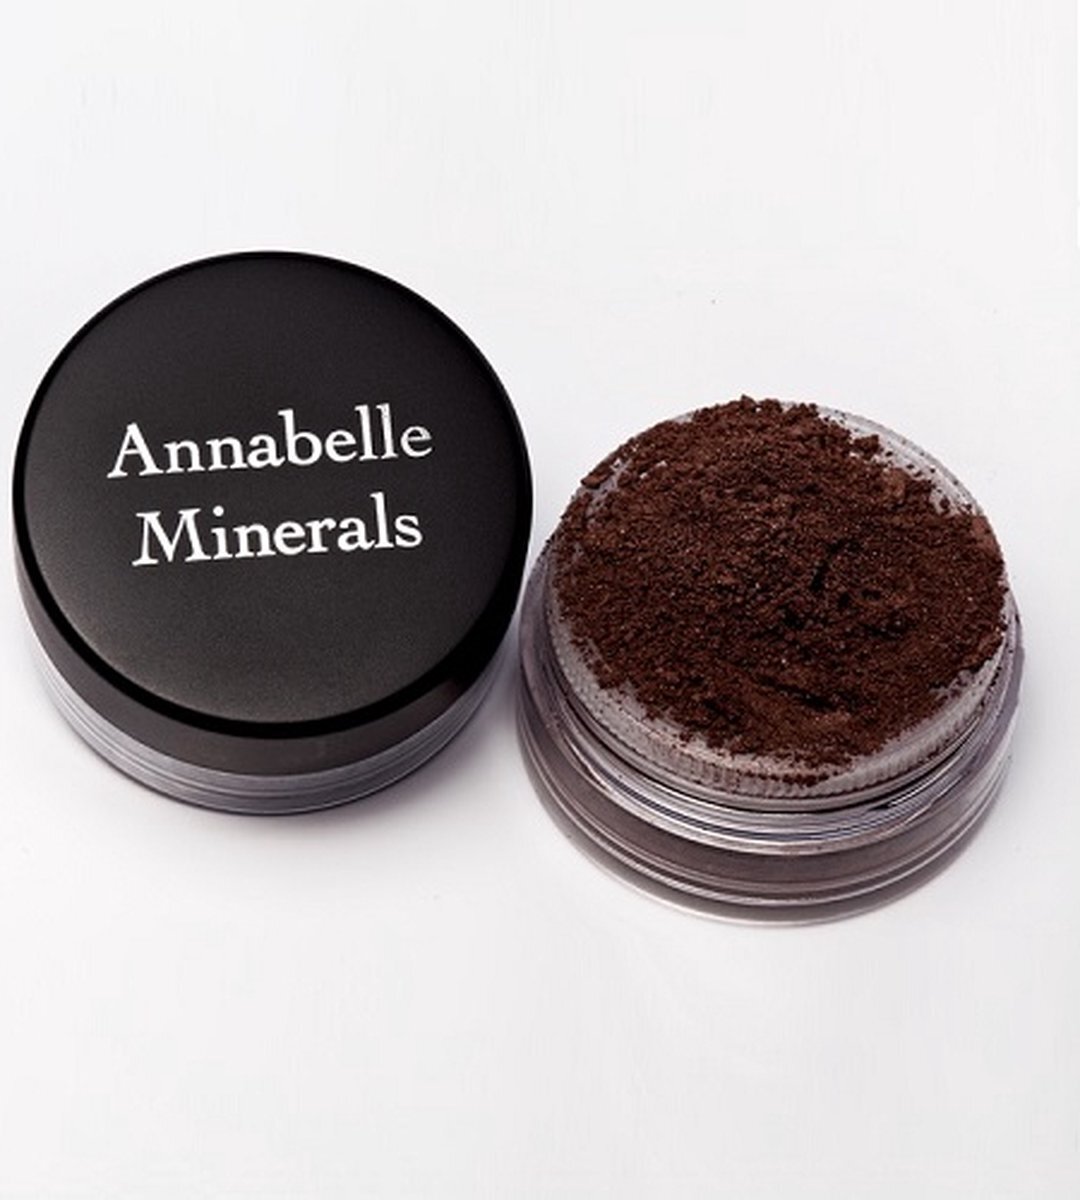 Annabelle Minerals Minerale schaduw Chocolade 3g